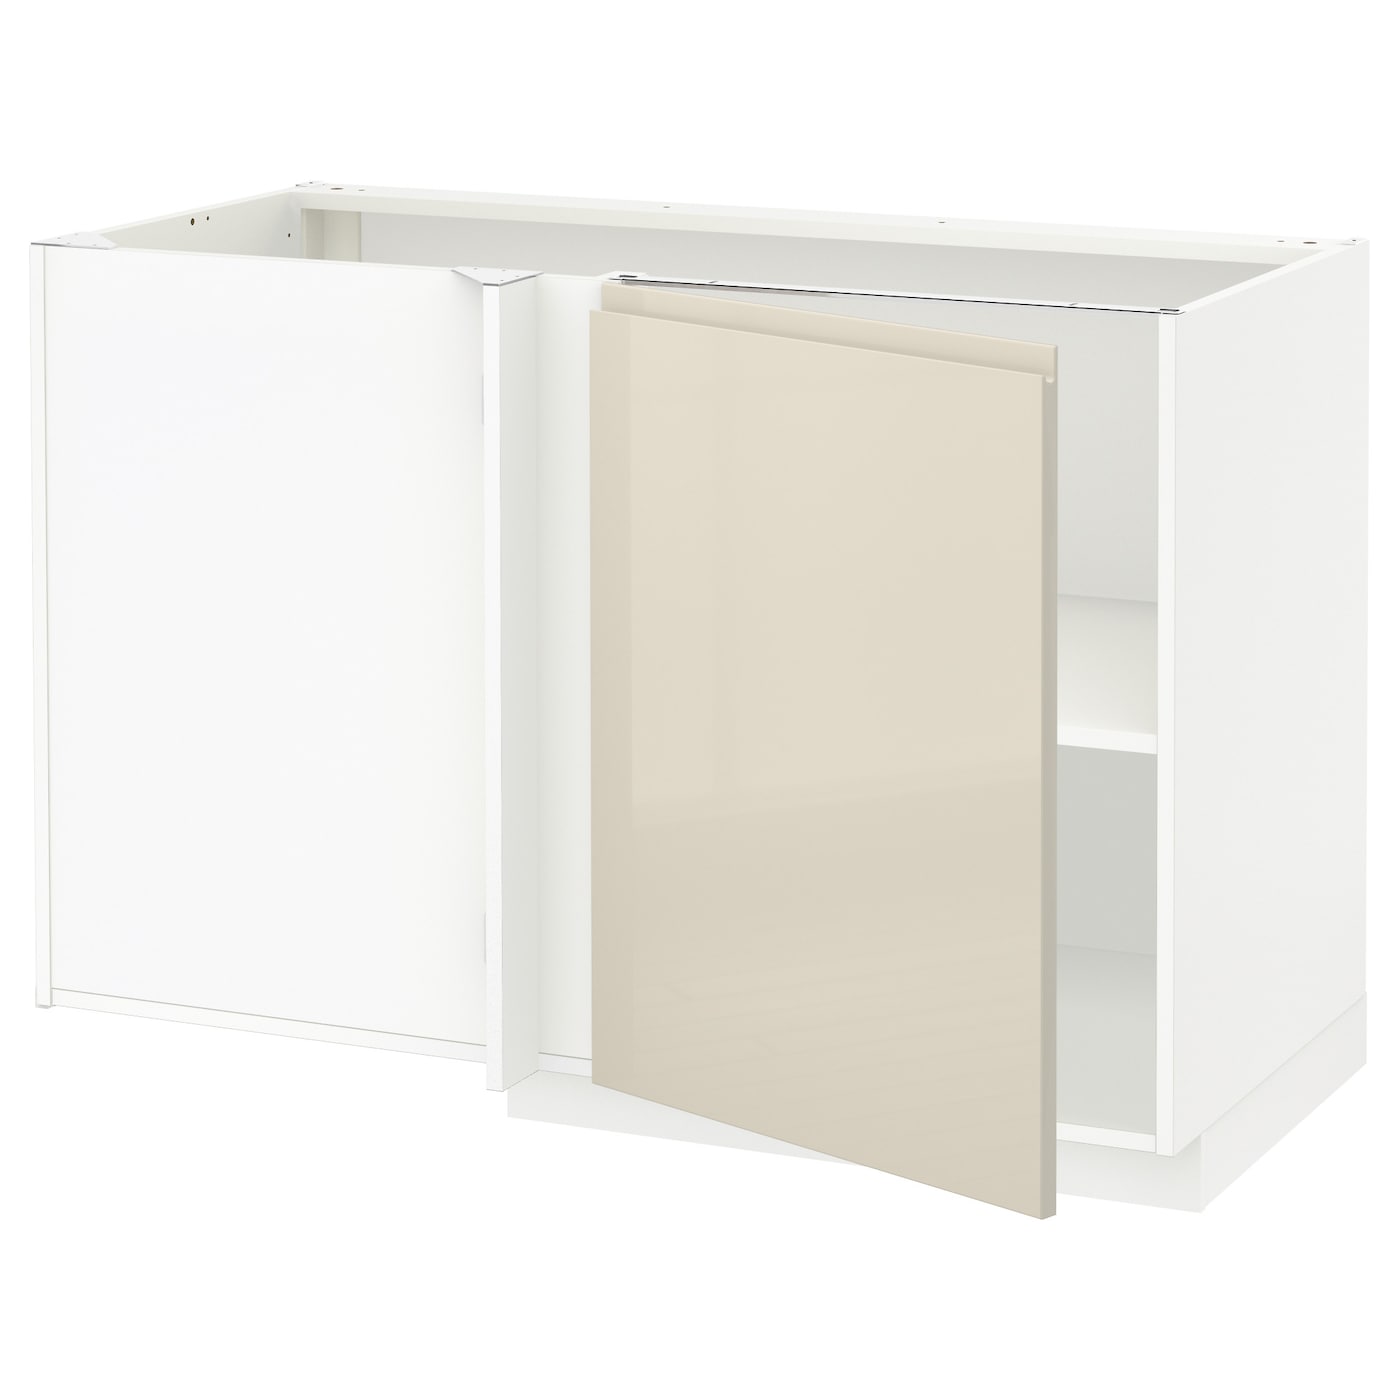 Напольный шкаф - IKEA METOD, 88x67,5x127,5см, белый/светло-бежевый, МЕТОД ИКЕА